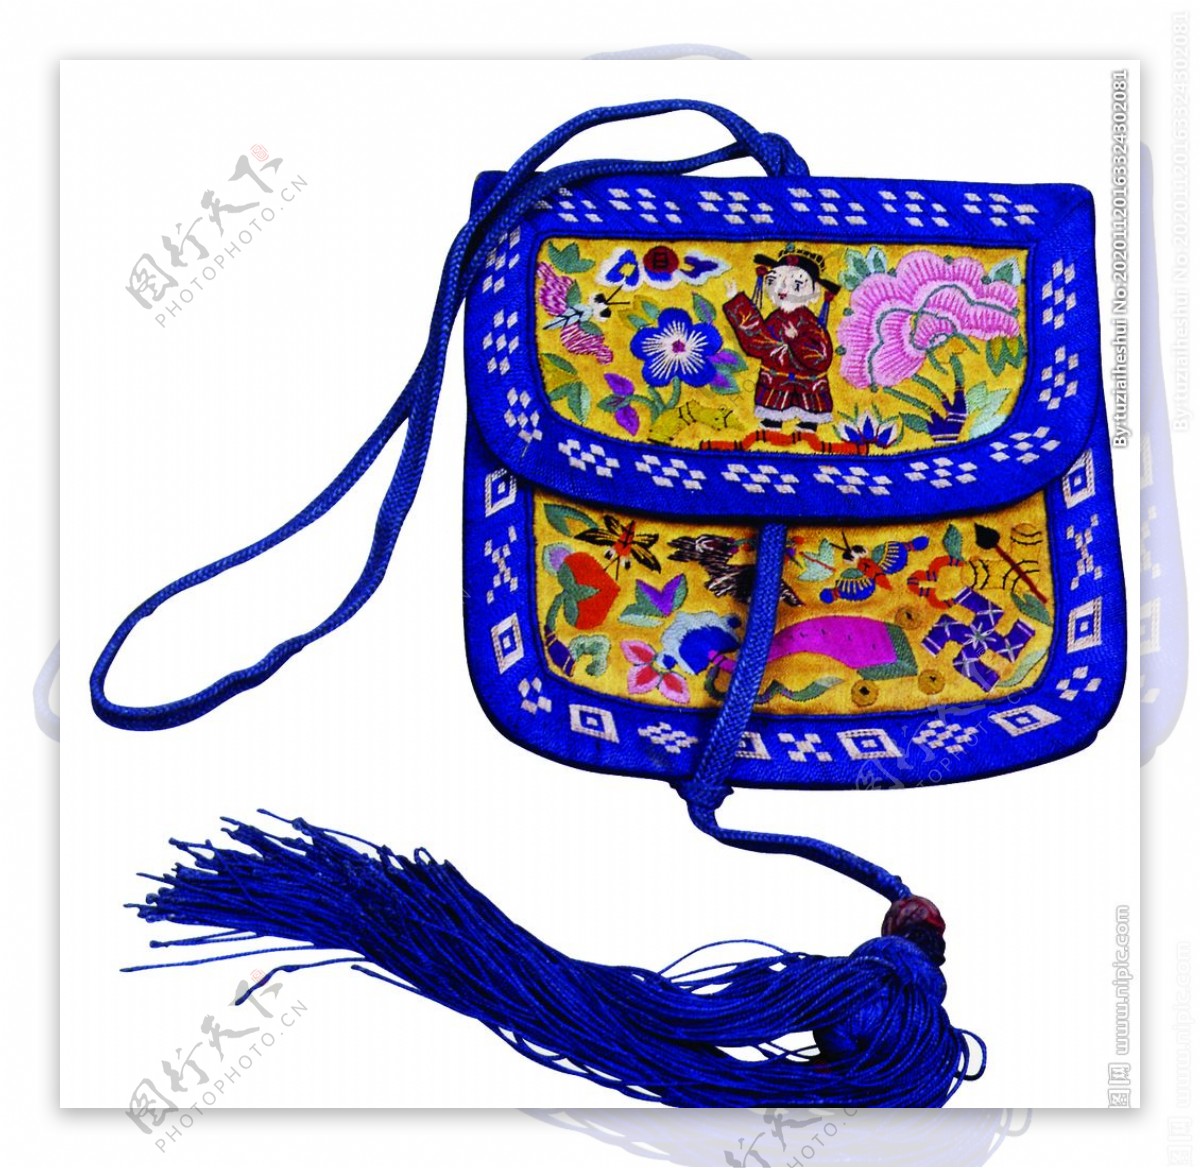 荷包香囊复古传统刺绣背景素材图片